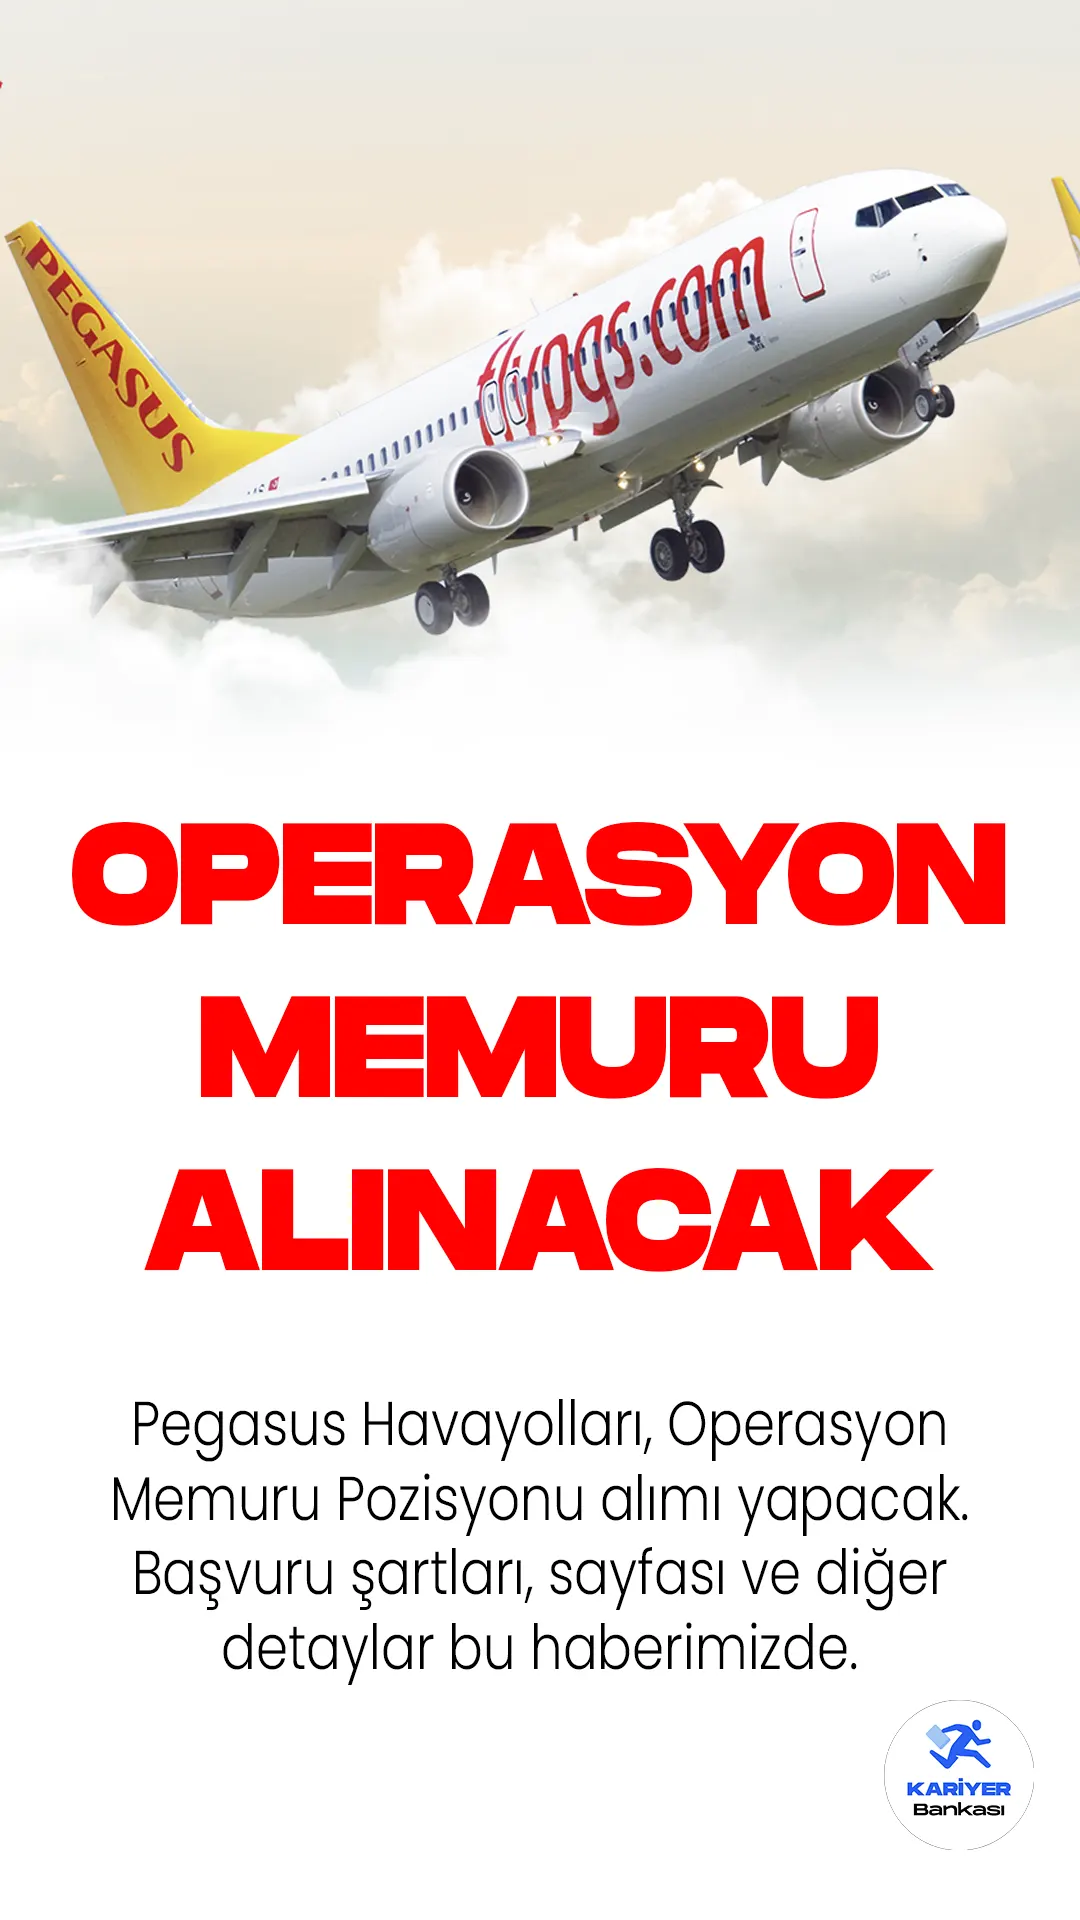 Pegasus Havayolları, Operasyon Memuru Pozisyonu alımı yapacak. Başvuru şartları, sayfası ve diğer detaylar bu haberimizde.